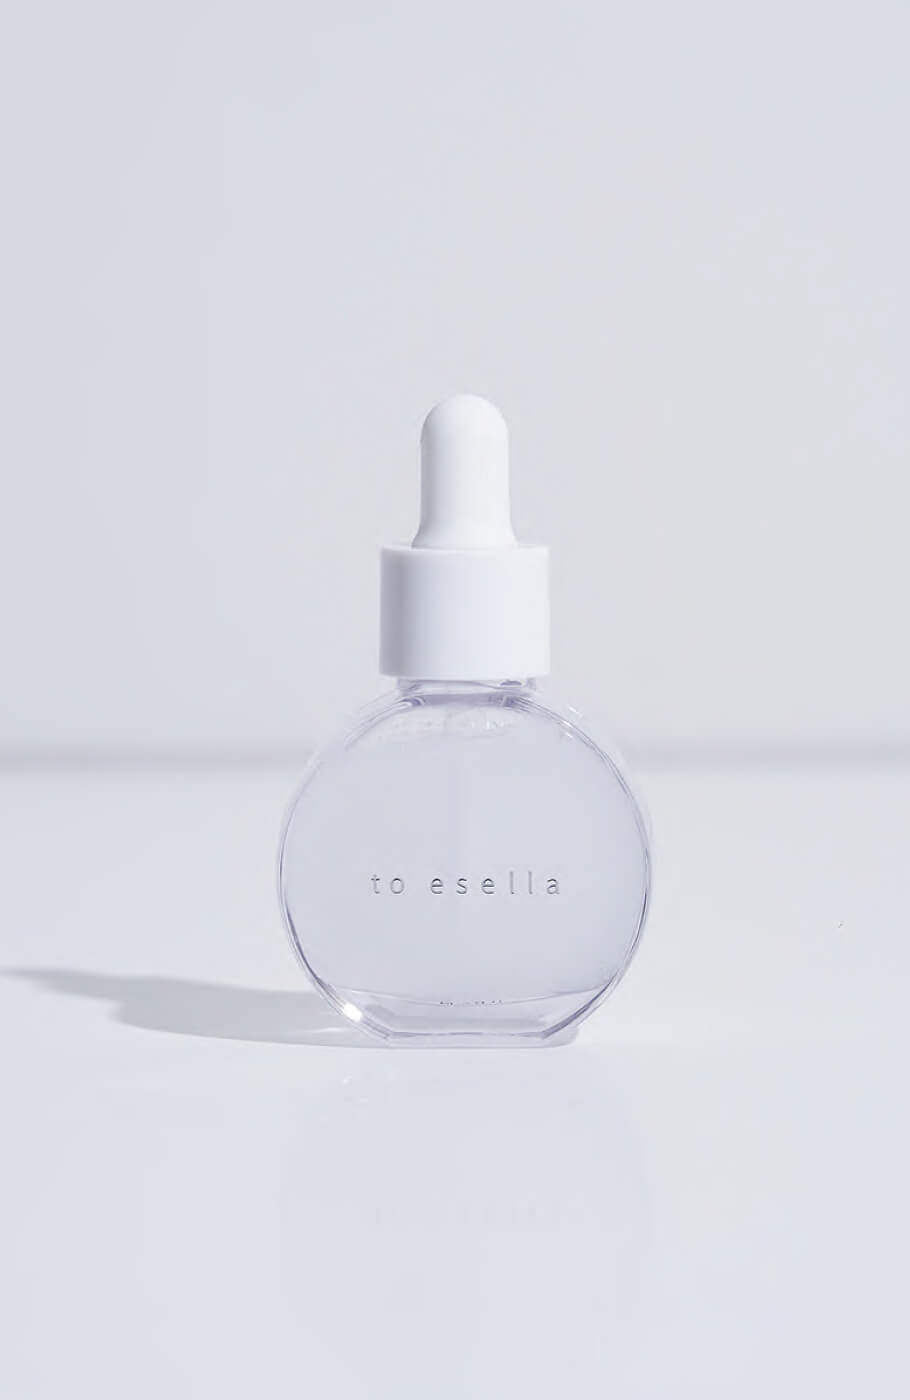 ホワイトハンドセラムto esella - 基礎化粧品